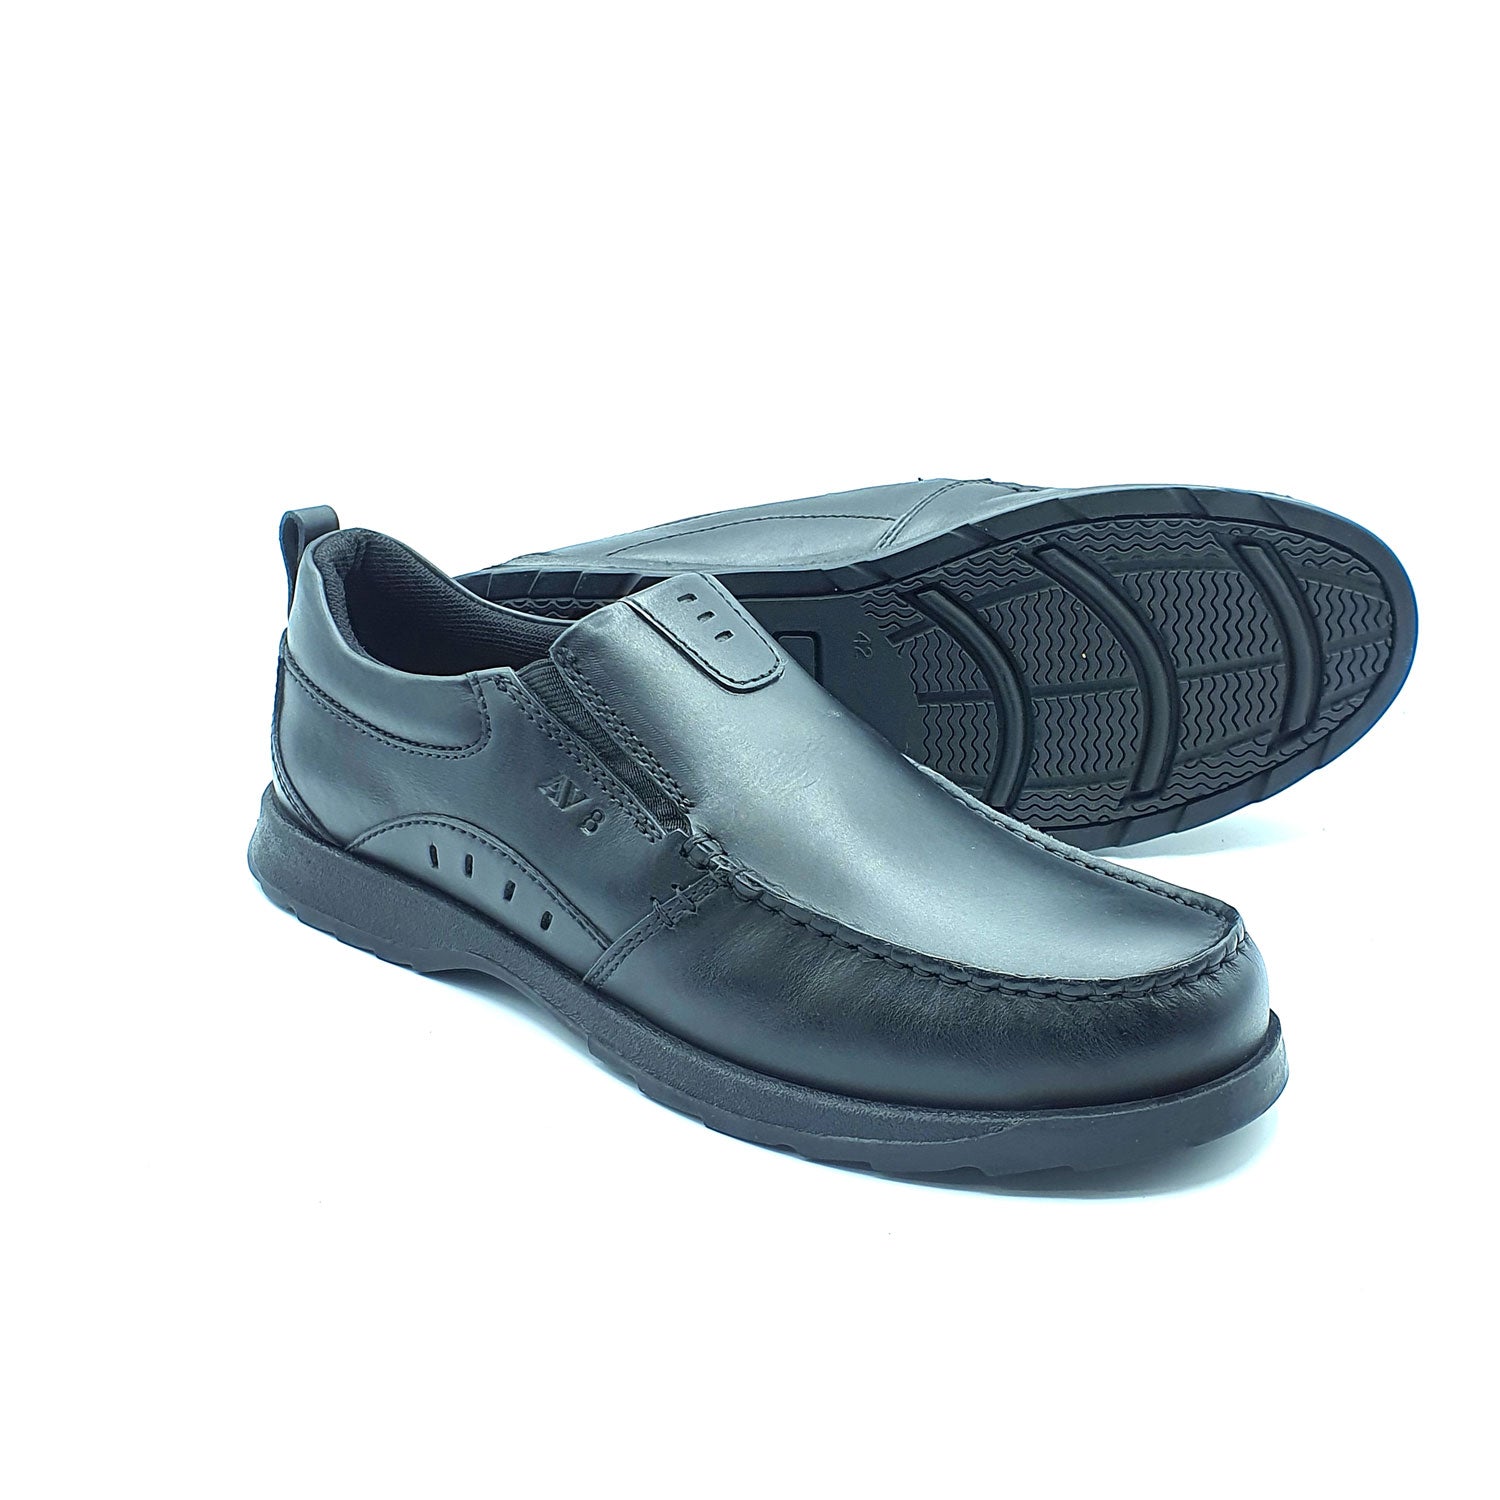 Dubarry Karter Slip On Av8 Shoe - Black 4 Shaws Department Stores